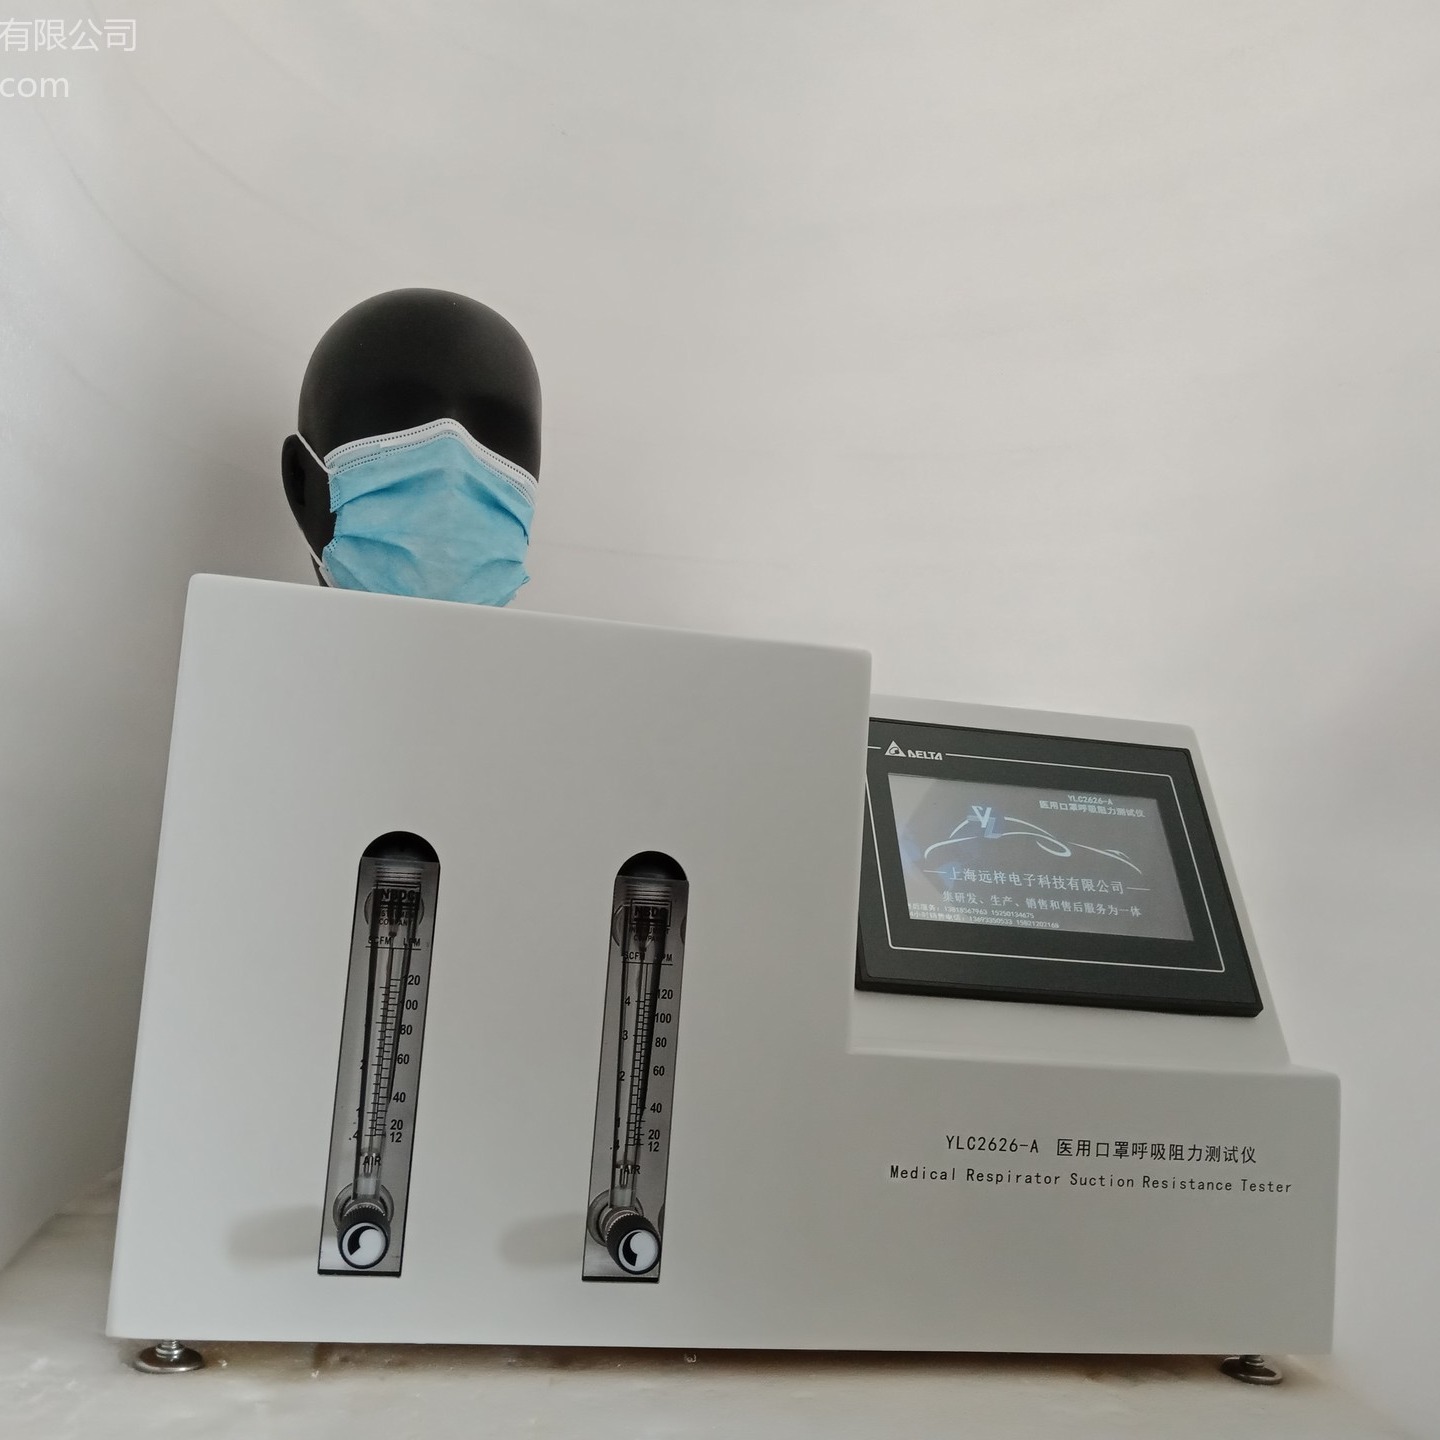 口罩阻力测试仪HXZ2626-A 医用外科口罩气流阻力测试仪 呼吸阻力测试仪 上海远梓